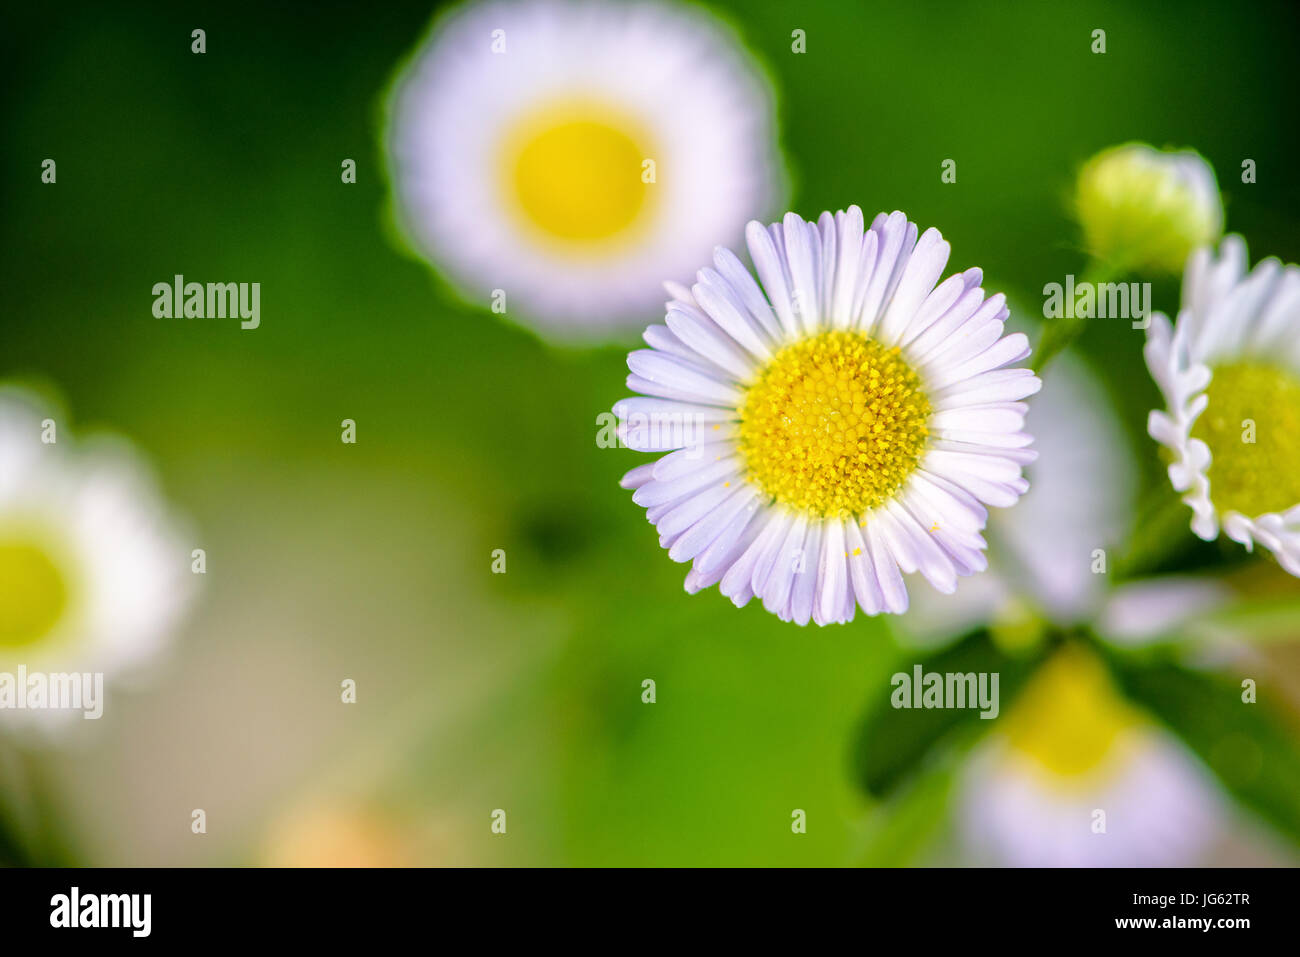 Closeup schöne kleine Blume mit gelben Pollen und weißes Blütenblatt von Bellis Perennis, gemeinsame Daisy, Lawn Daisy, Woundwort, Bruisewort oder Englisch Daisy Stockfoto